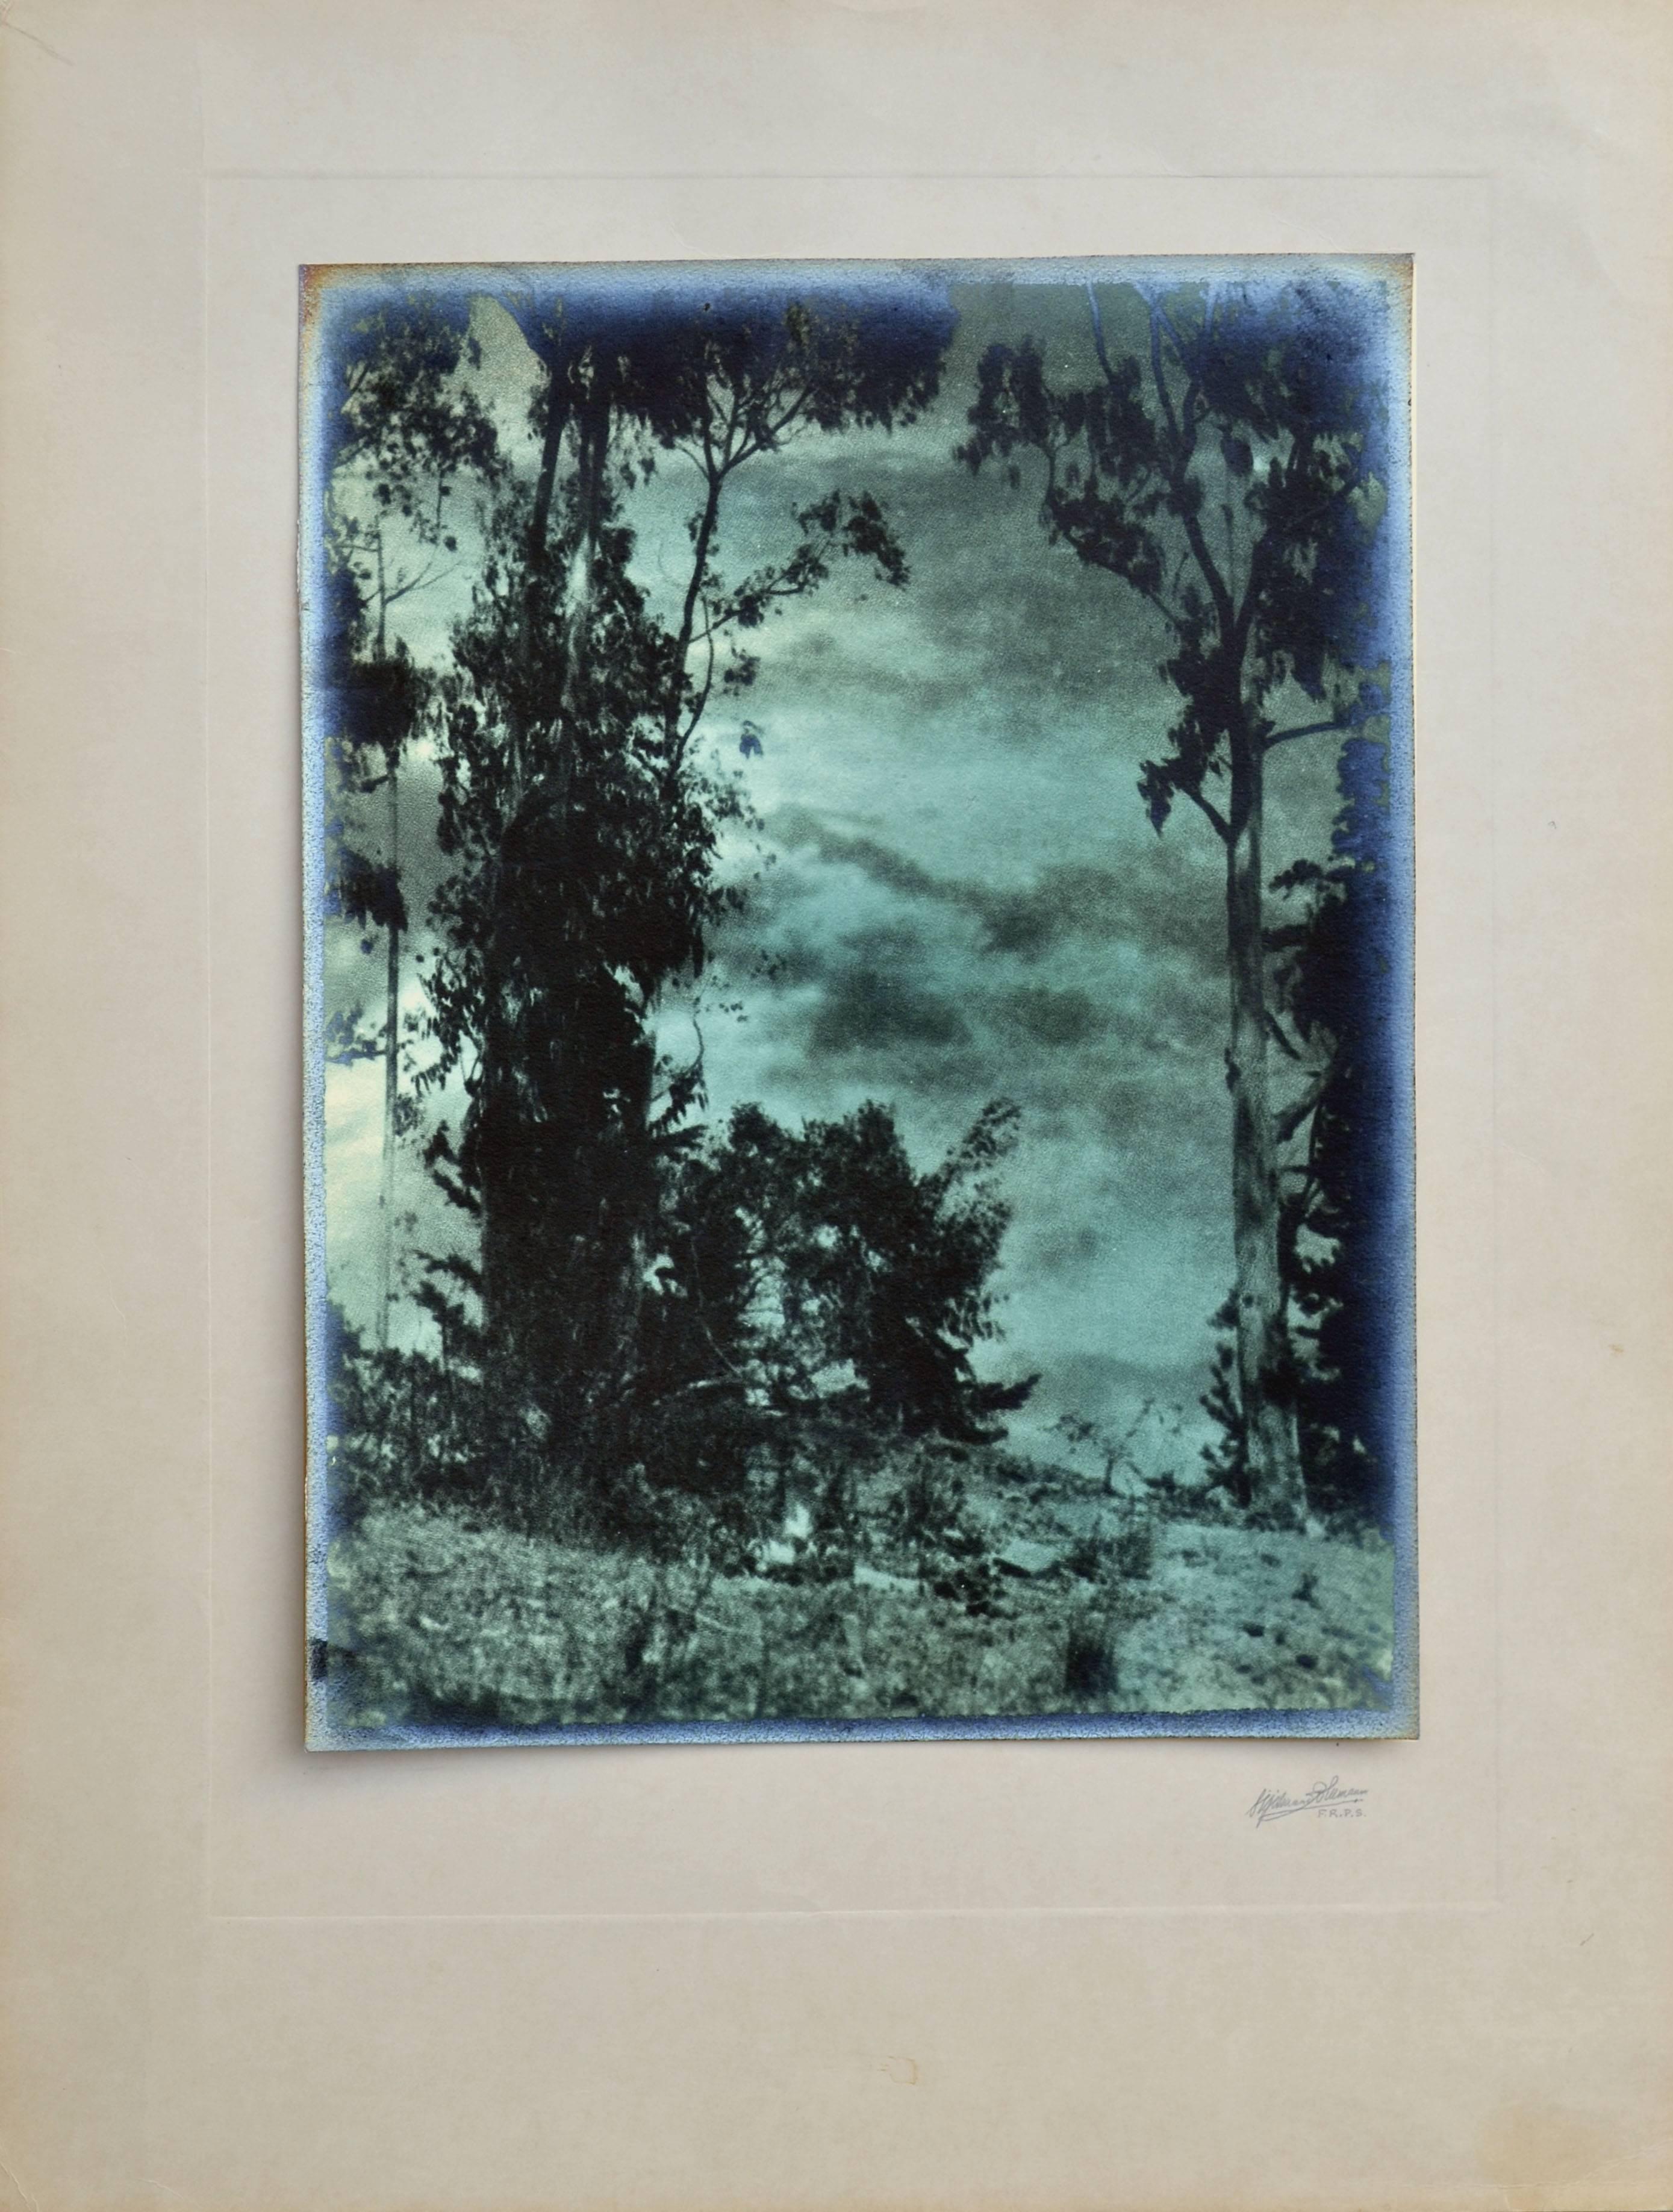 Landscape Photograph Sigismund Blumann - Paysage photographique du début du XXe siècle - Vue à travers le ciel